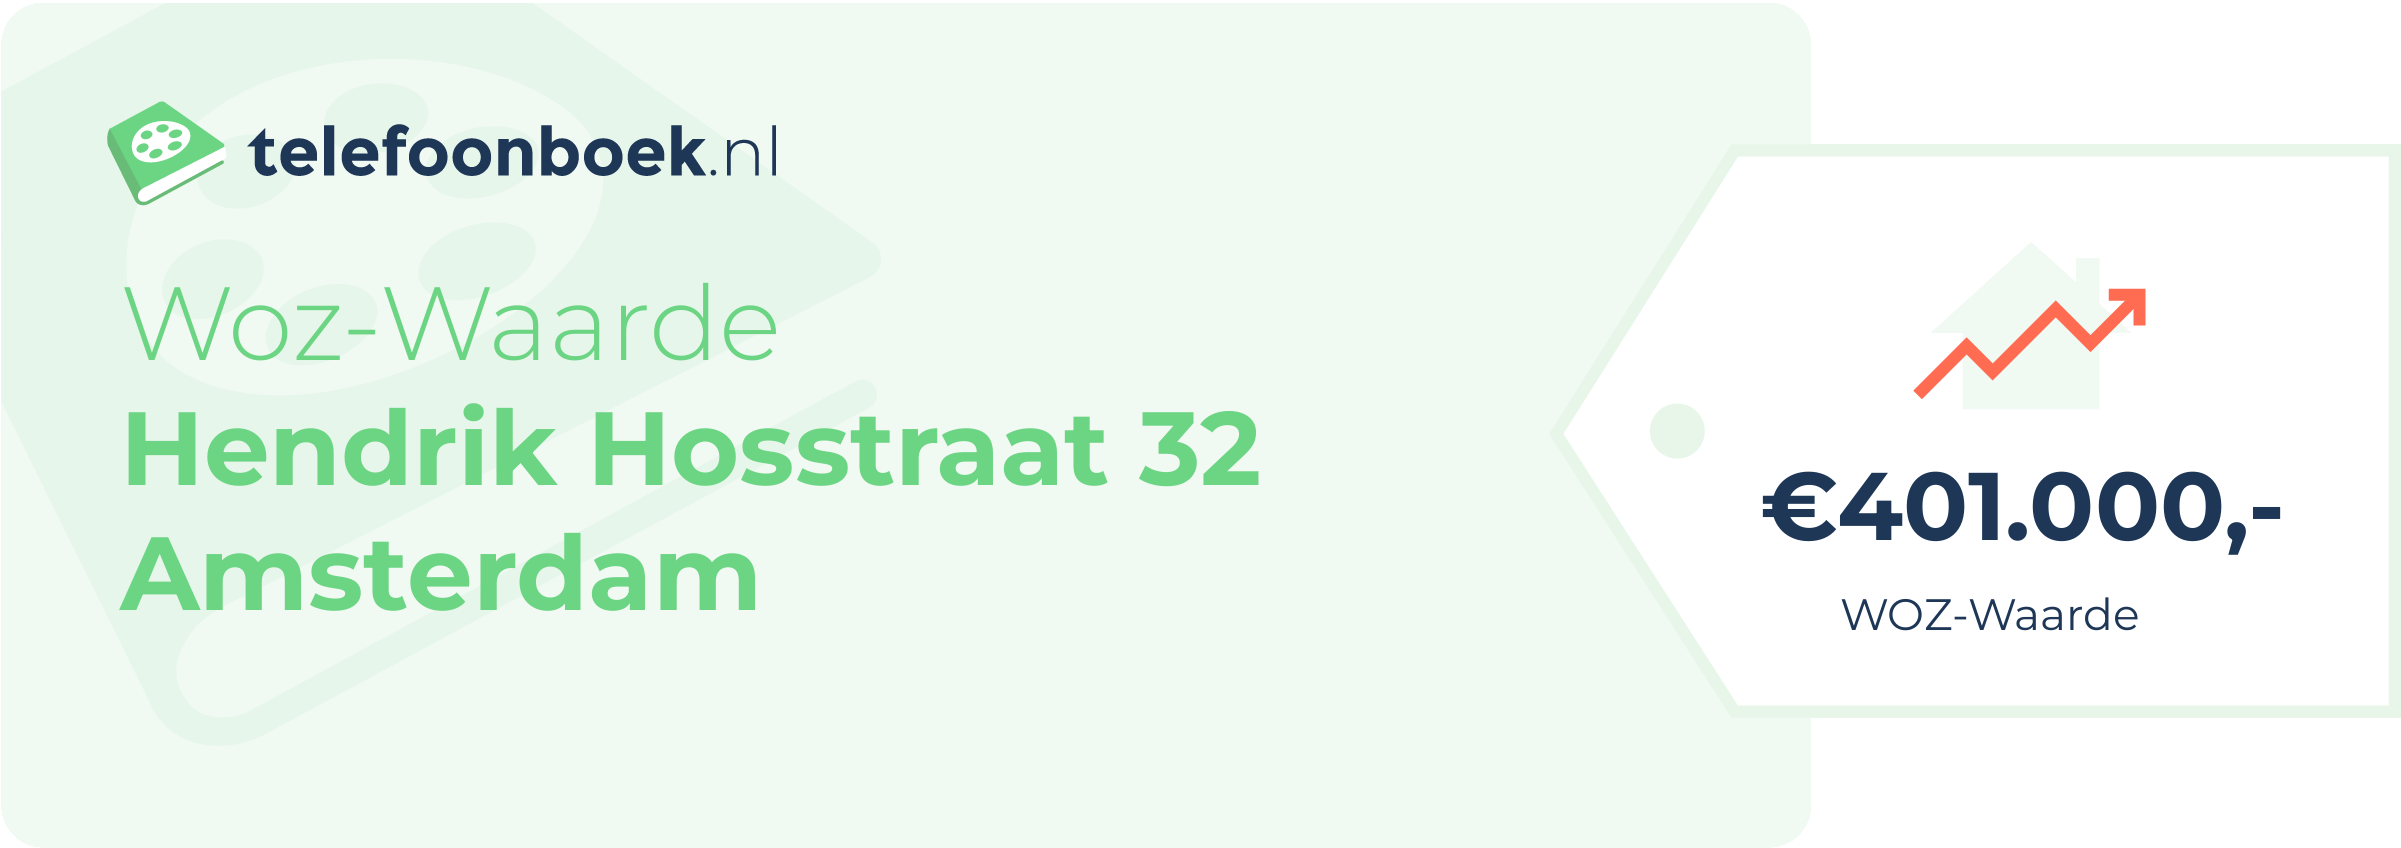 WOZ-waarde Hendrik Hosstraat 32 Amsterdam